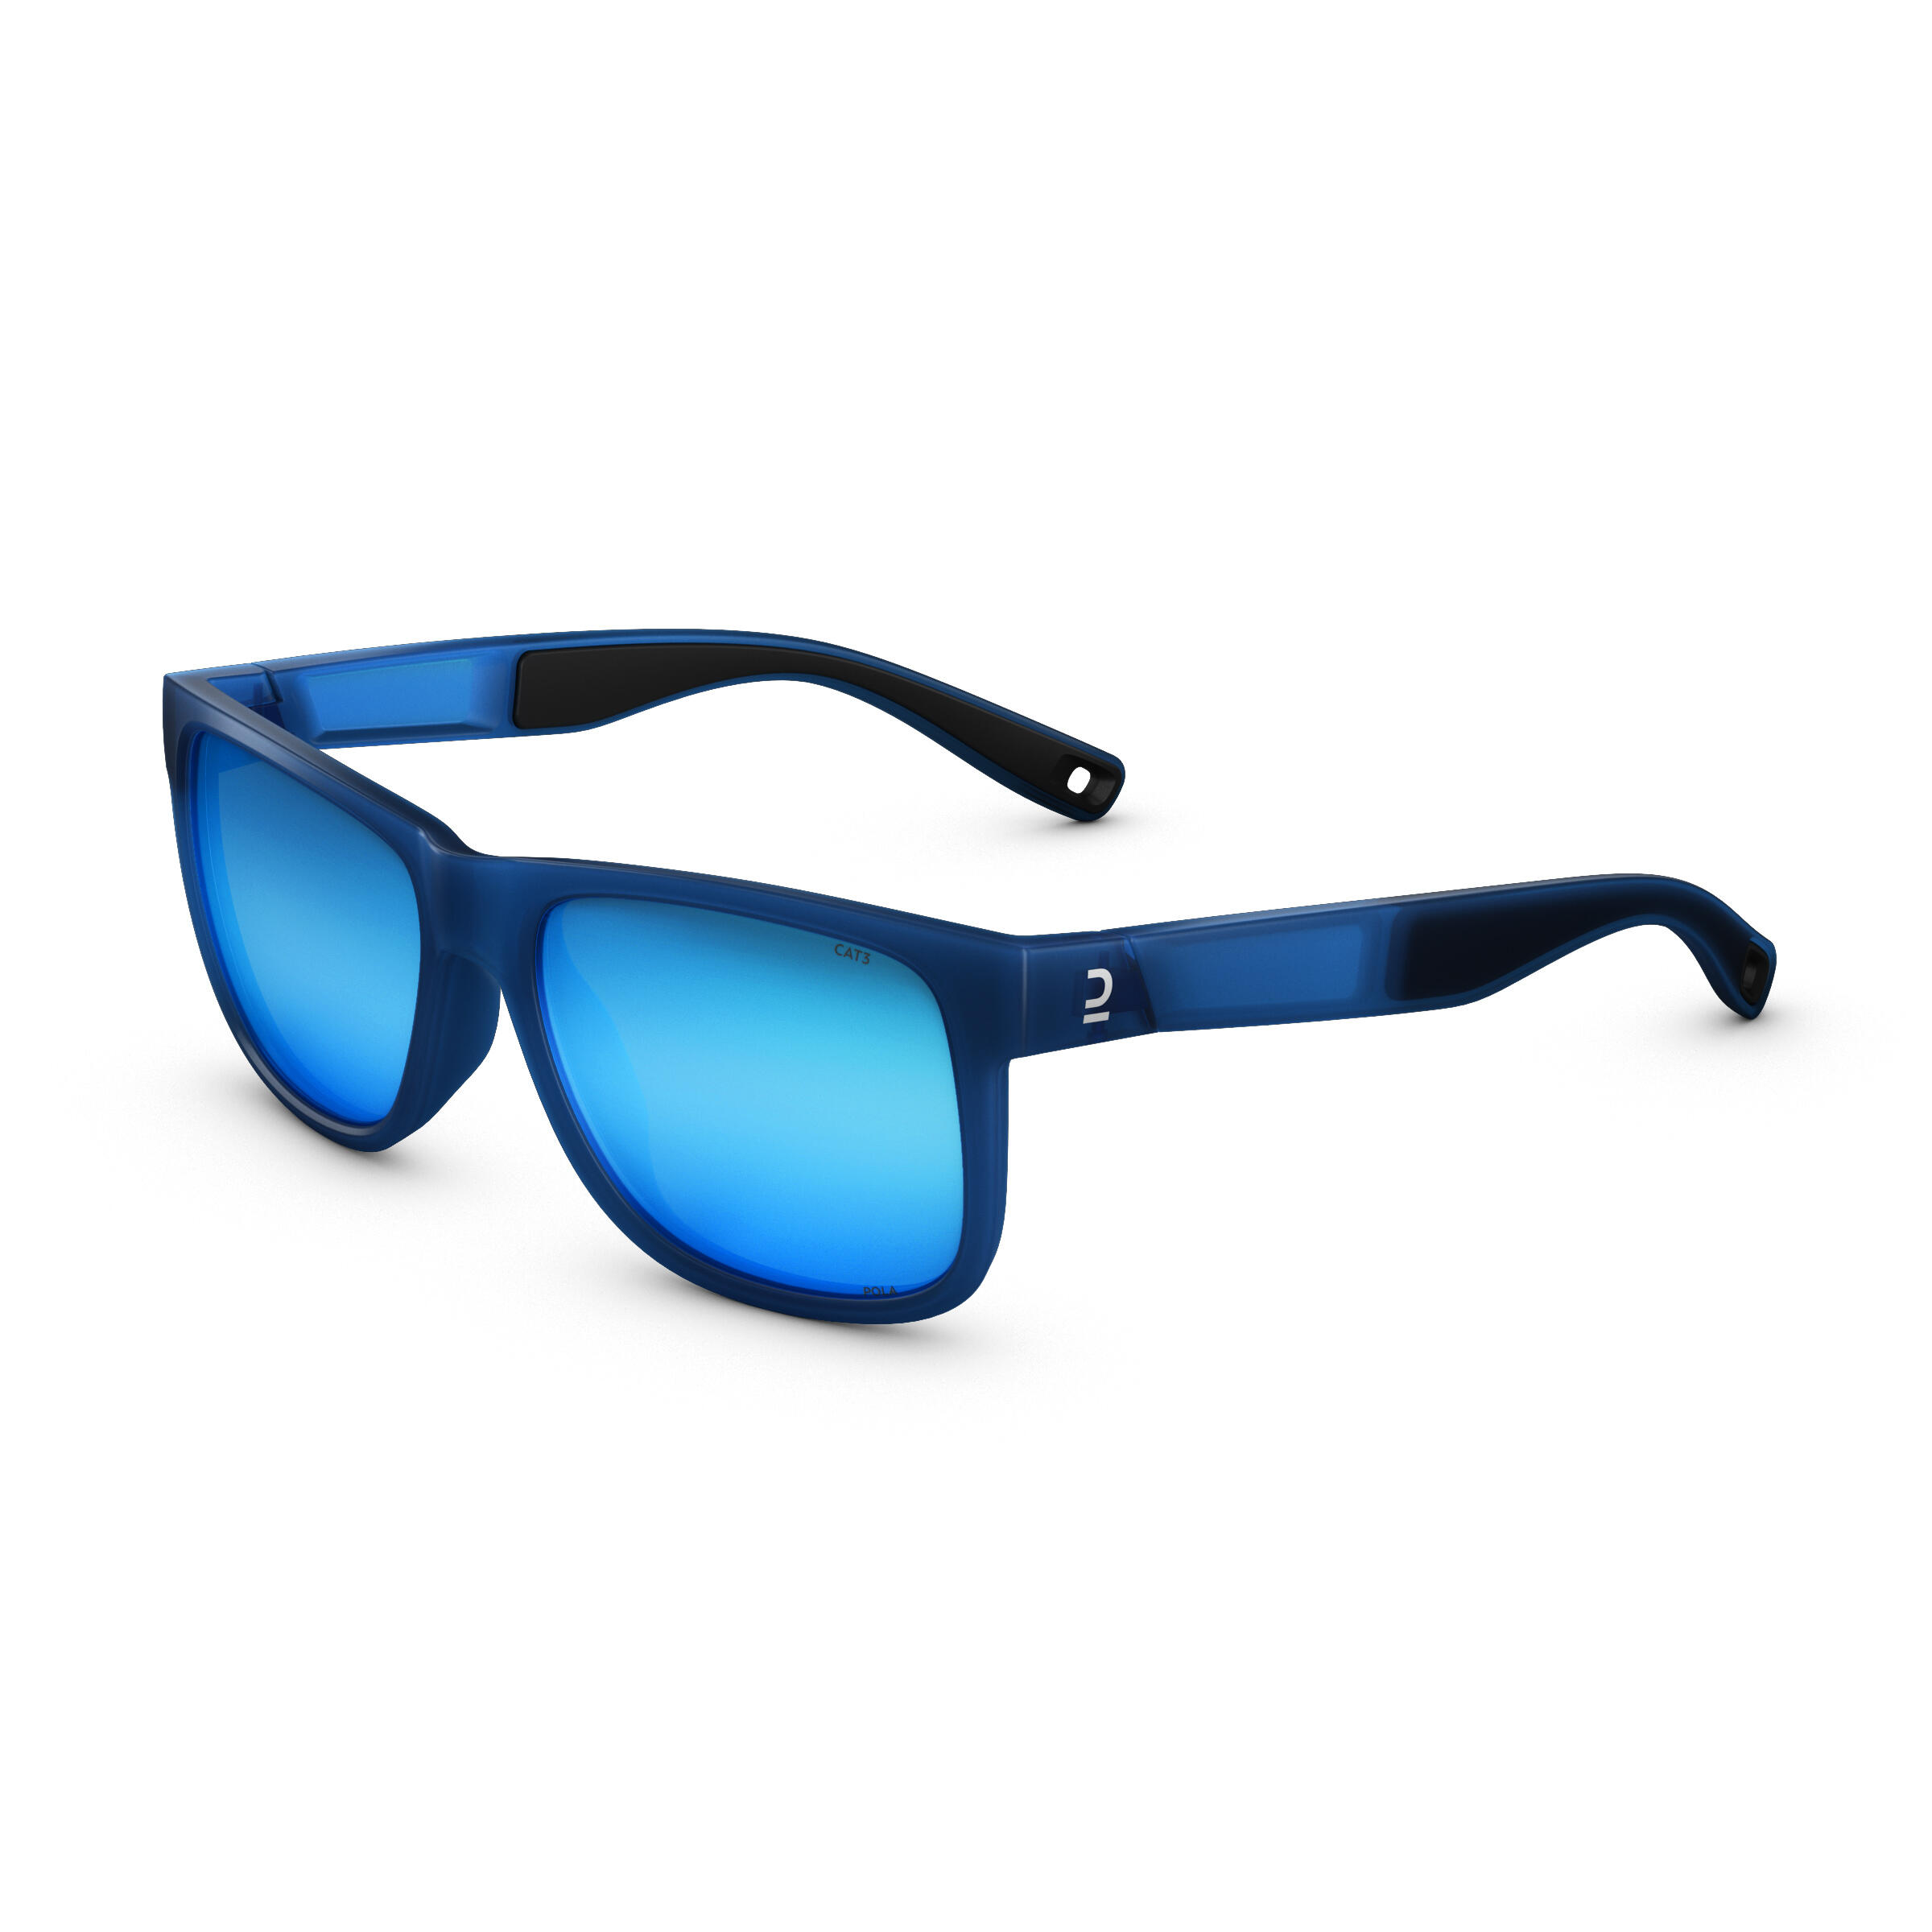 Adult Hiking Sunglasses Cat 3 MH140 Blue